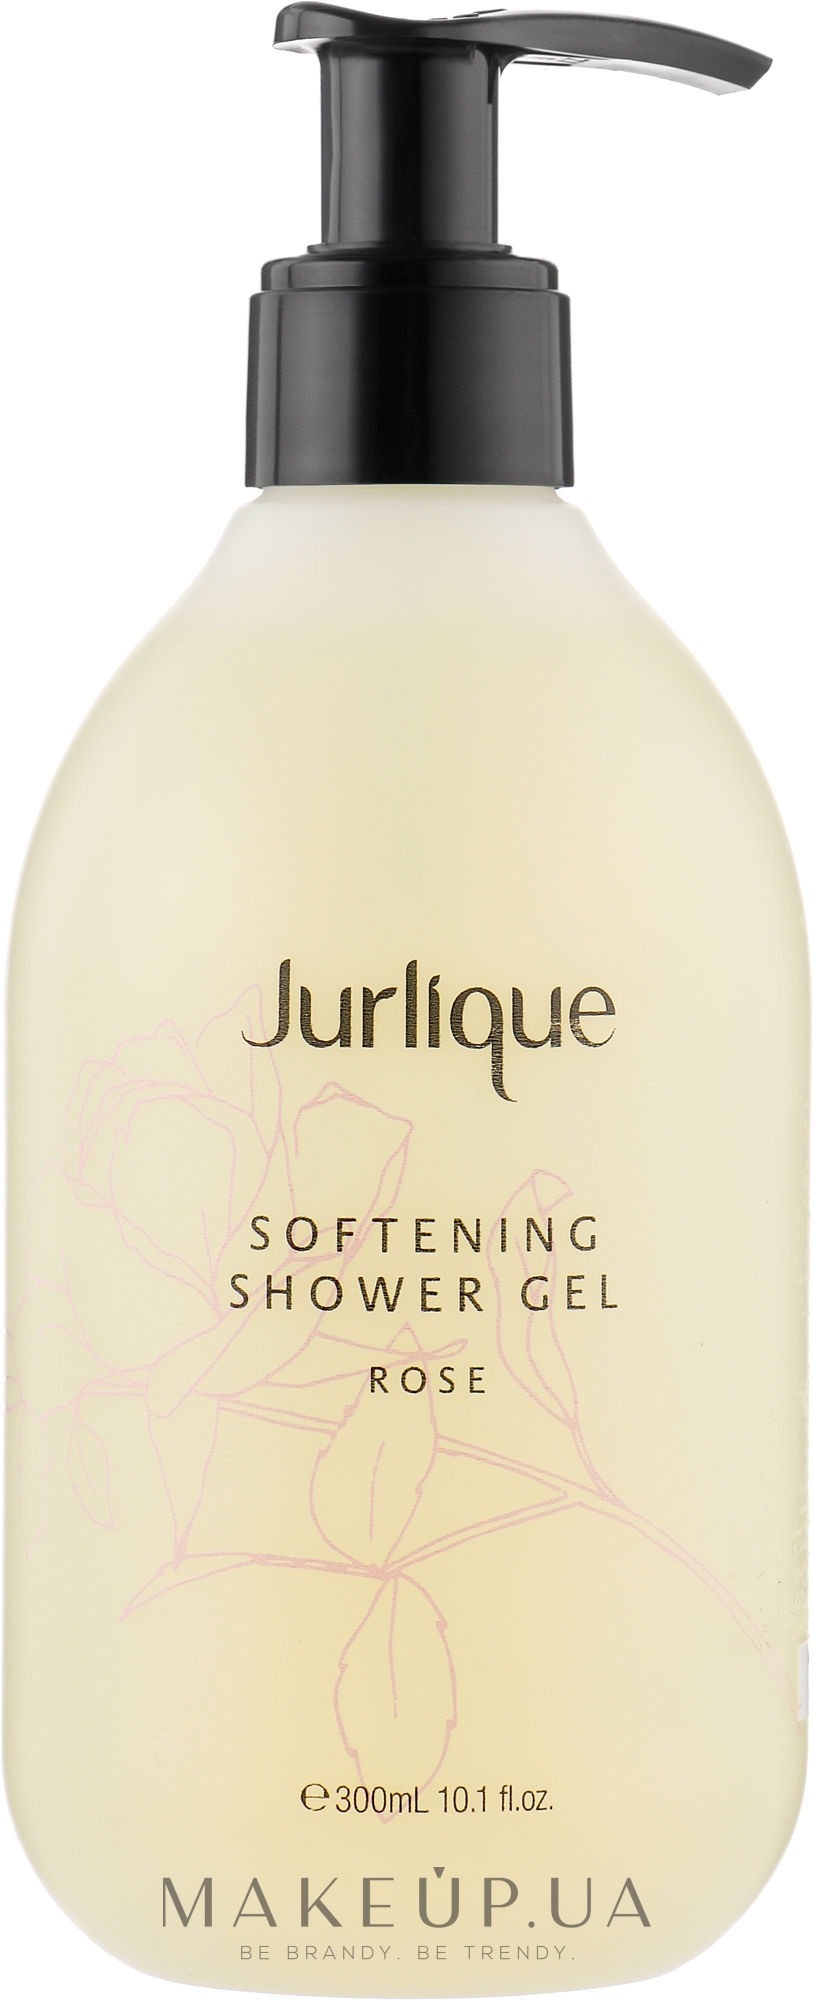 Пом'якшувальний гель для душу з екстрактом троянди - Jurlique Softening Shower Gel Rose — фото 300ml